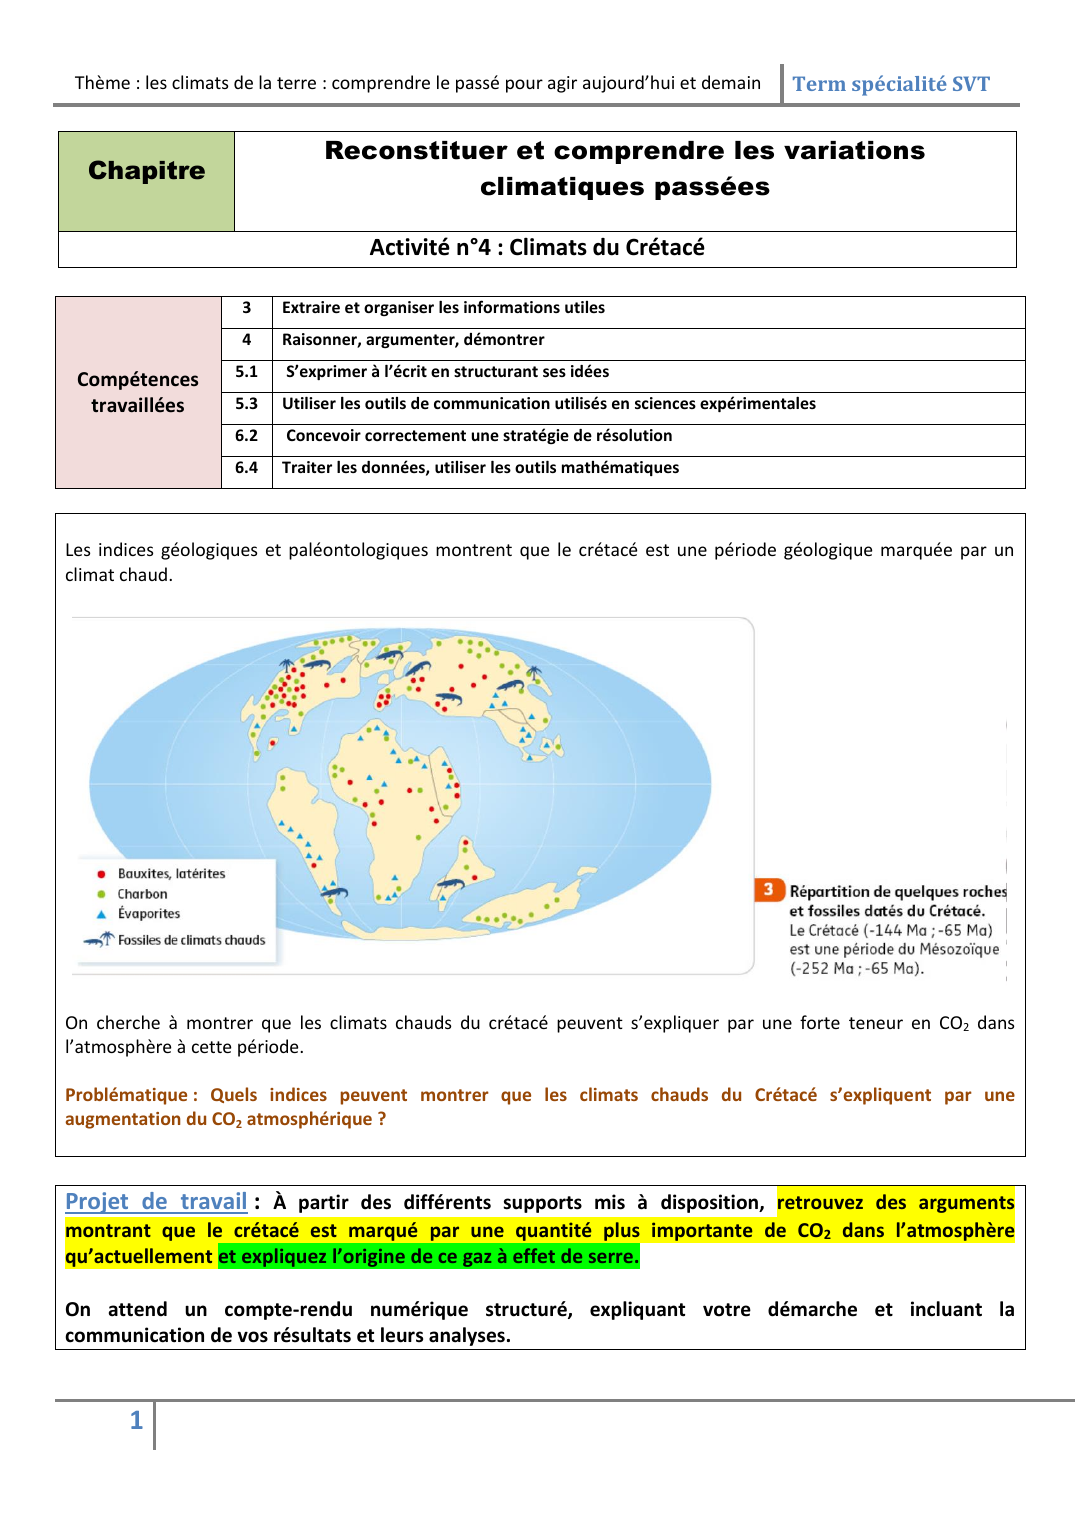 Prévisualisation du document SVT ACTIVITE: Reconstituer et comprendre les variations climatiques passées